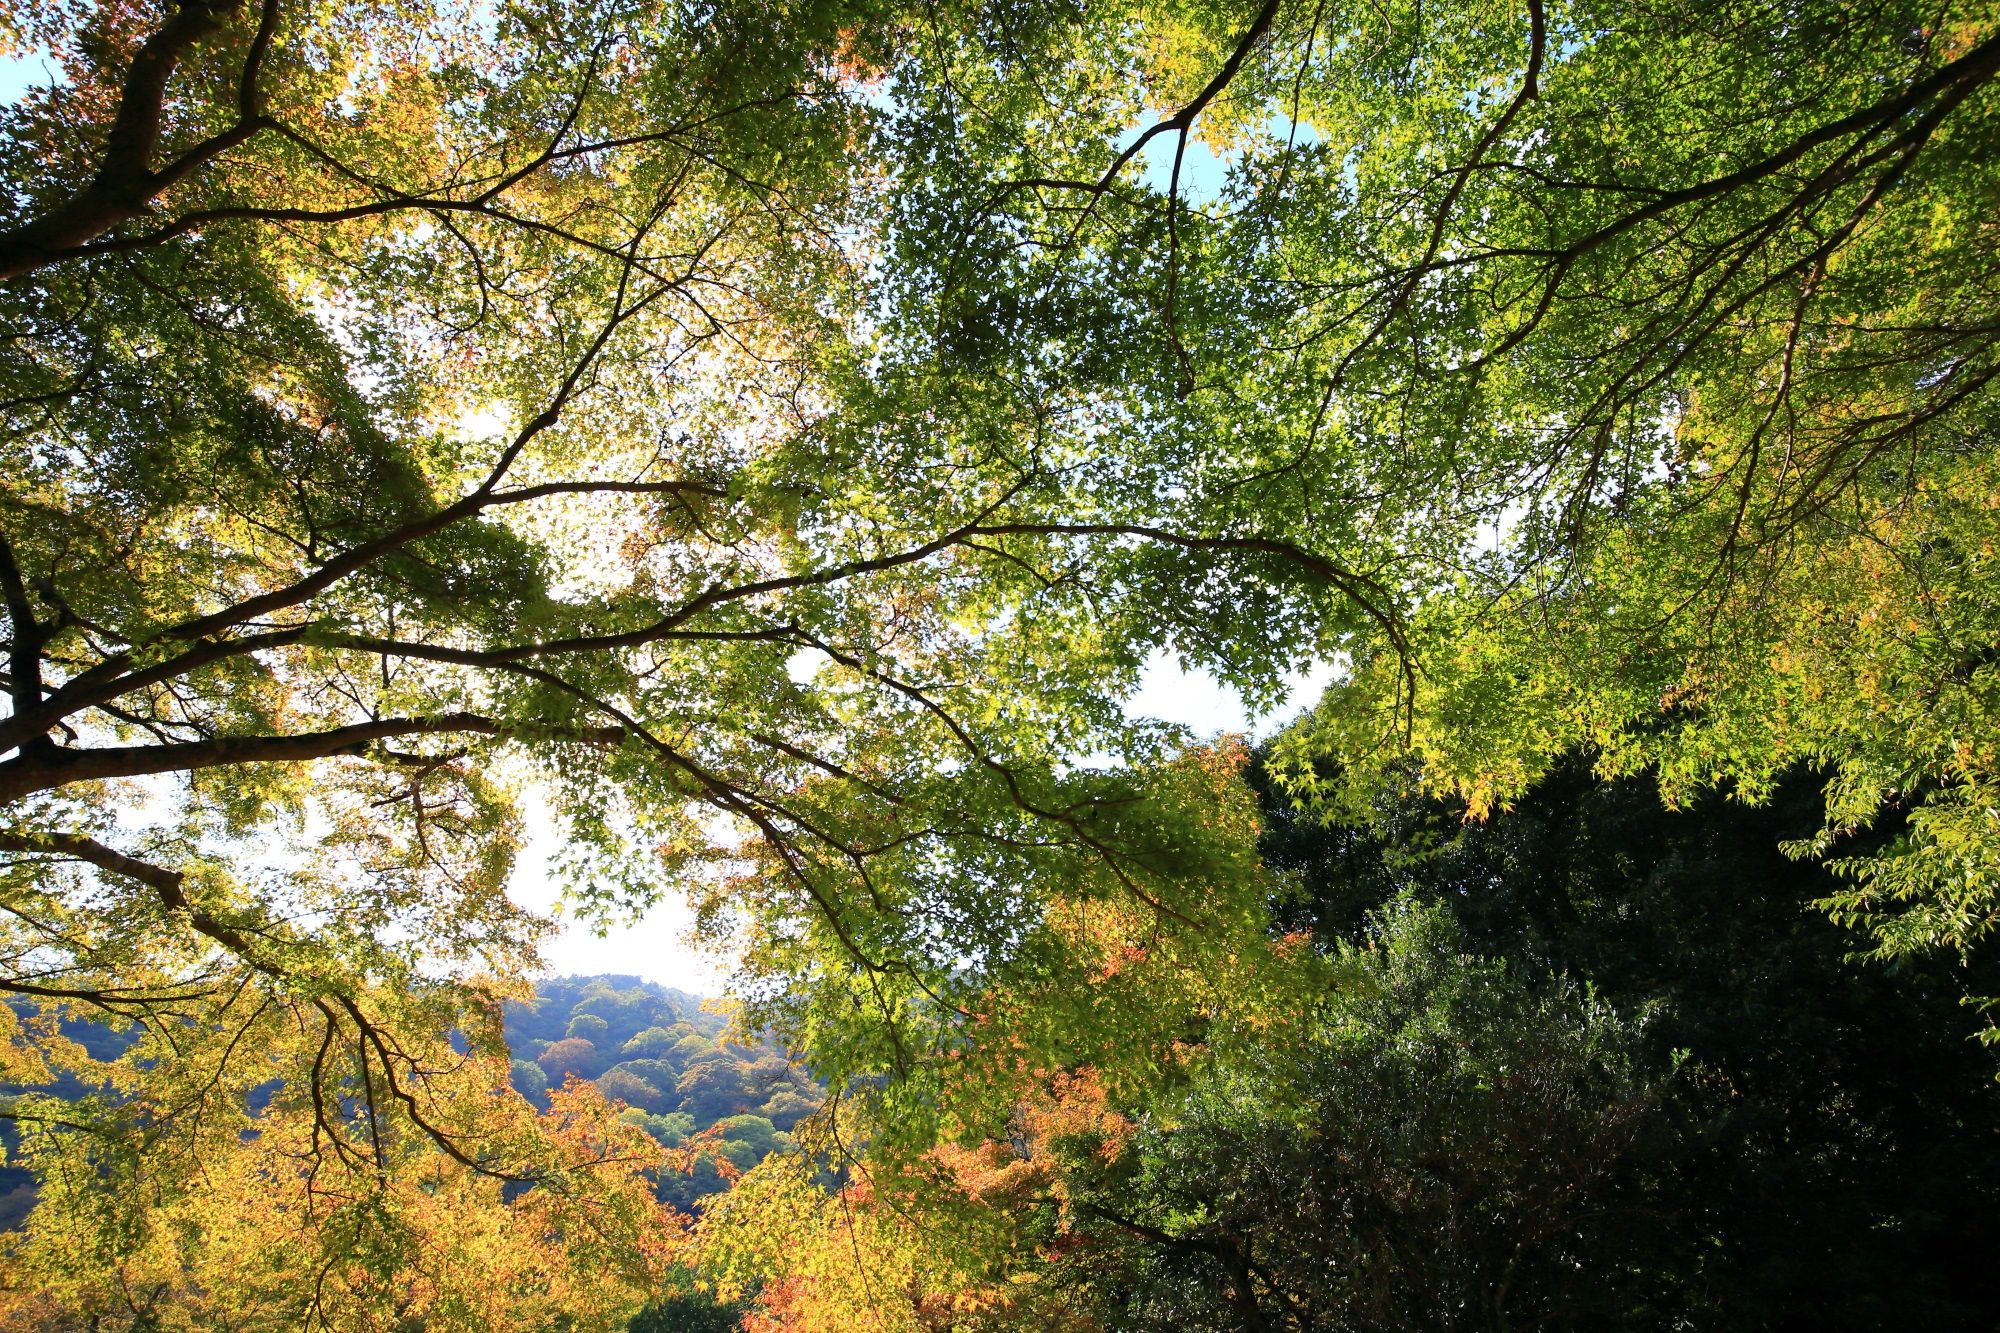 嵐山公園 亀山地区の青もみじと嵐山